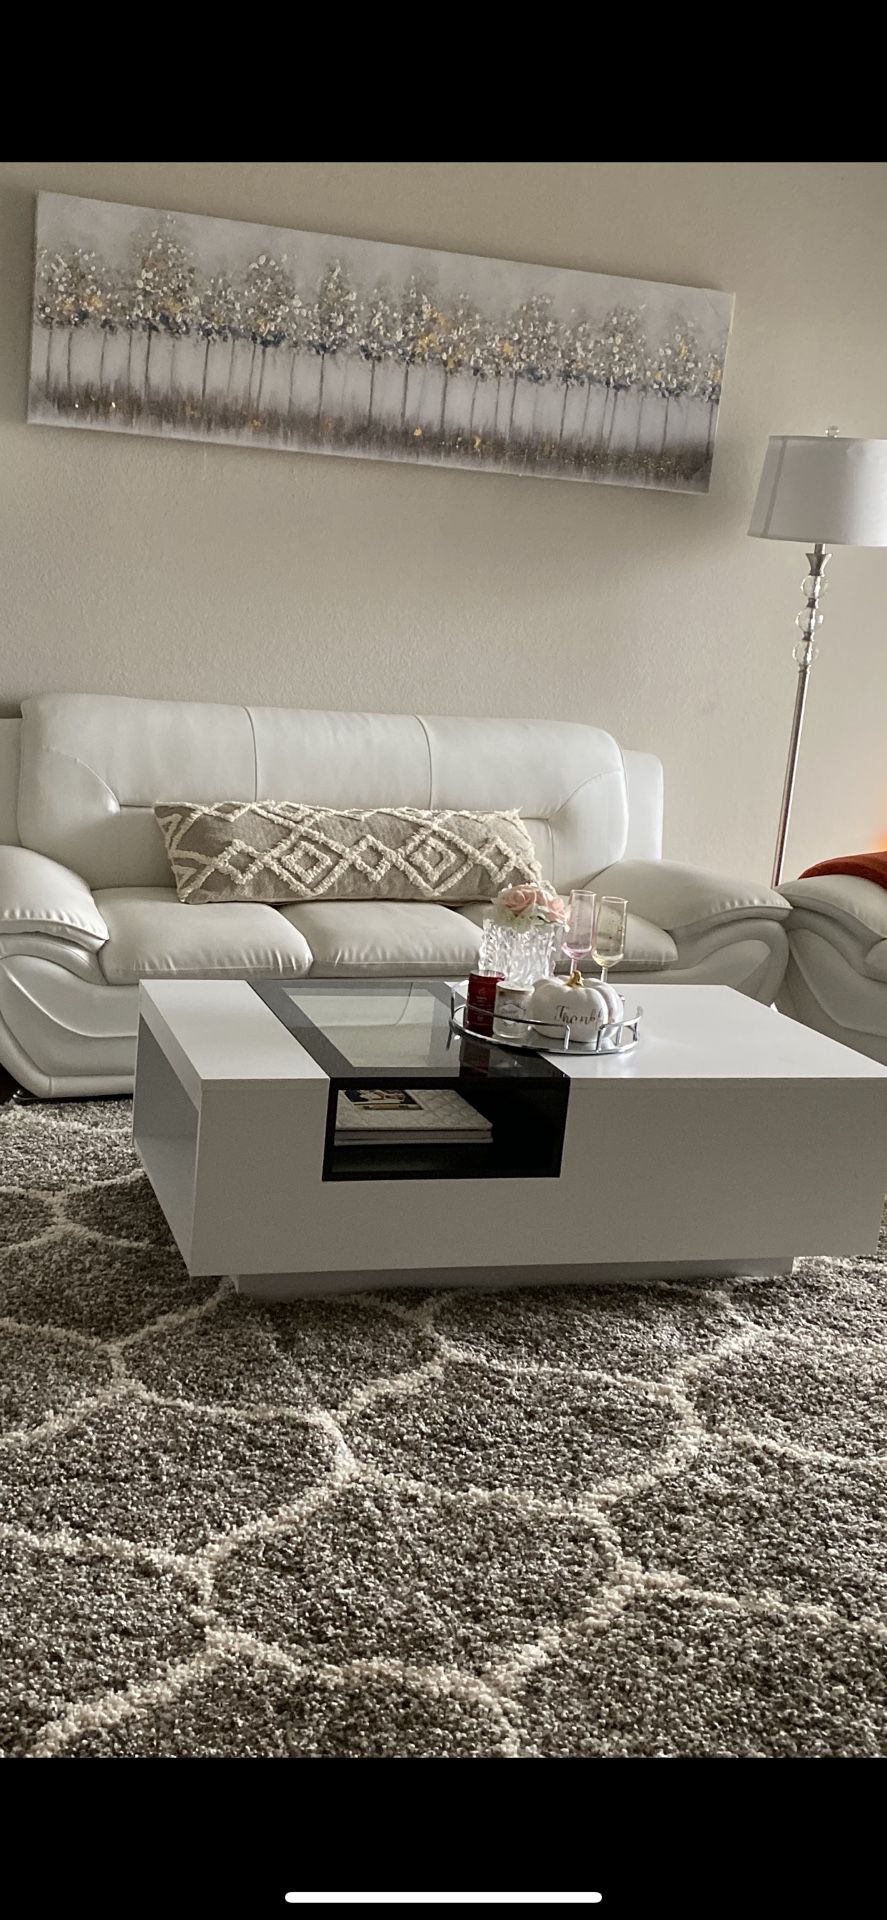 Coffee table and sofa set